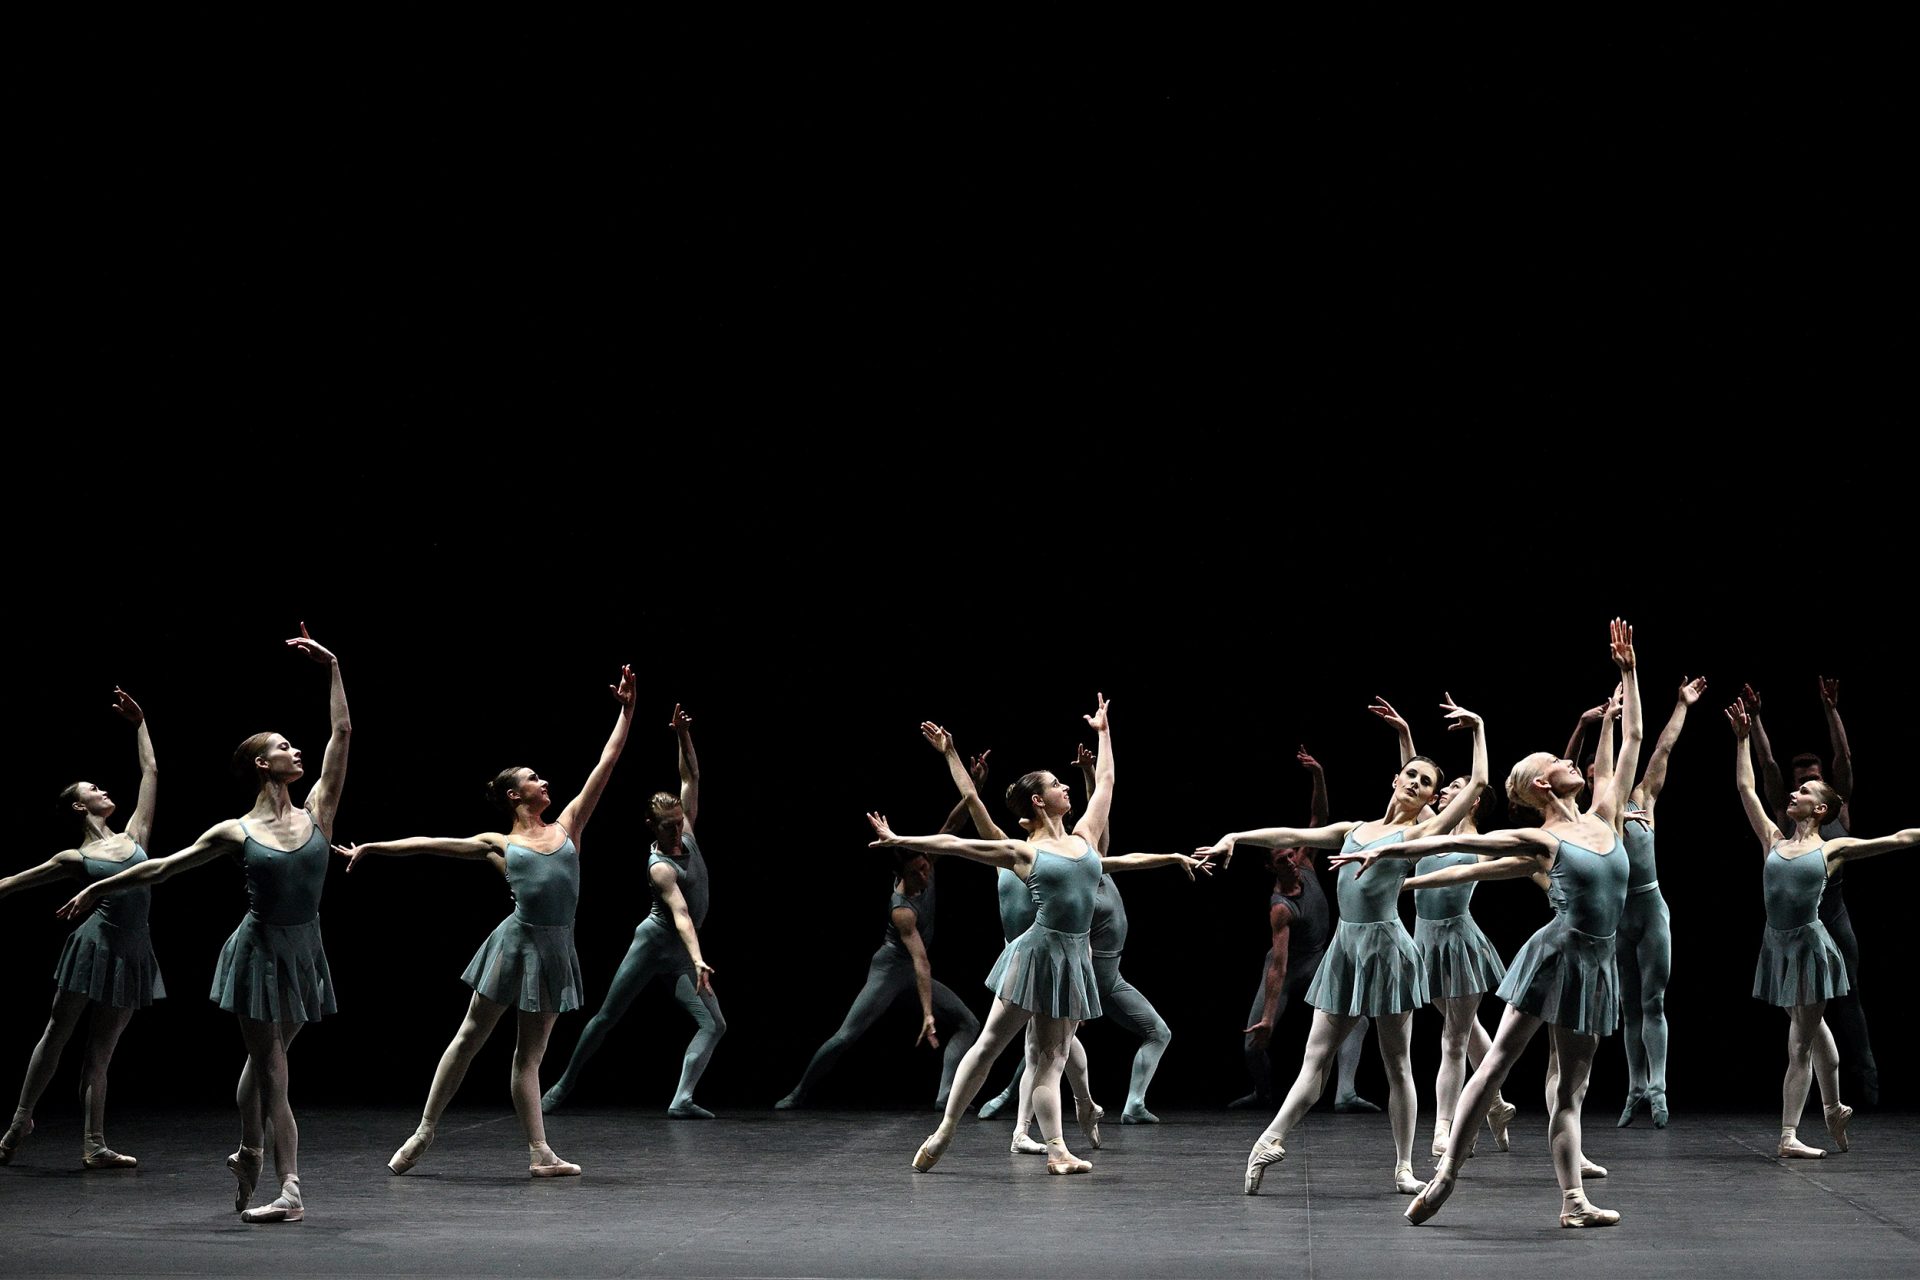 English-National-Ballet-dancers-in-Blake-Works-I-for-The-Forsythe-Evening-c-Laurent-Liotardo-2500x1667-1